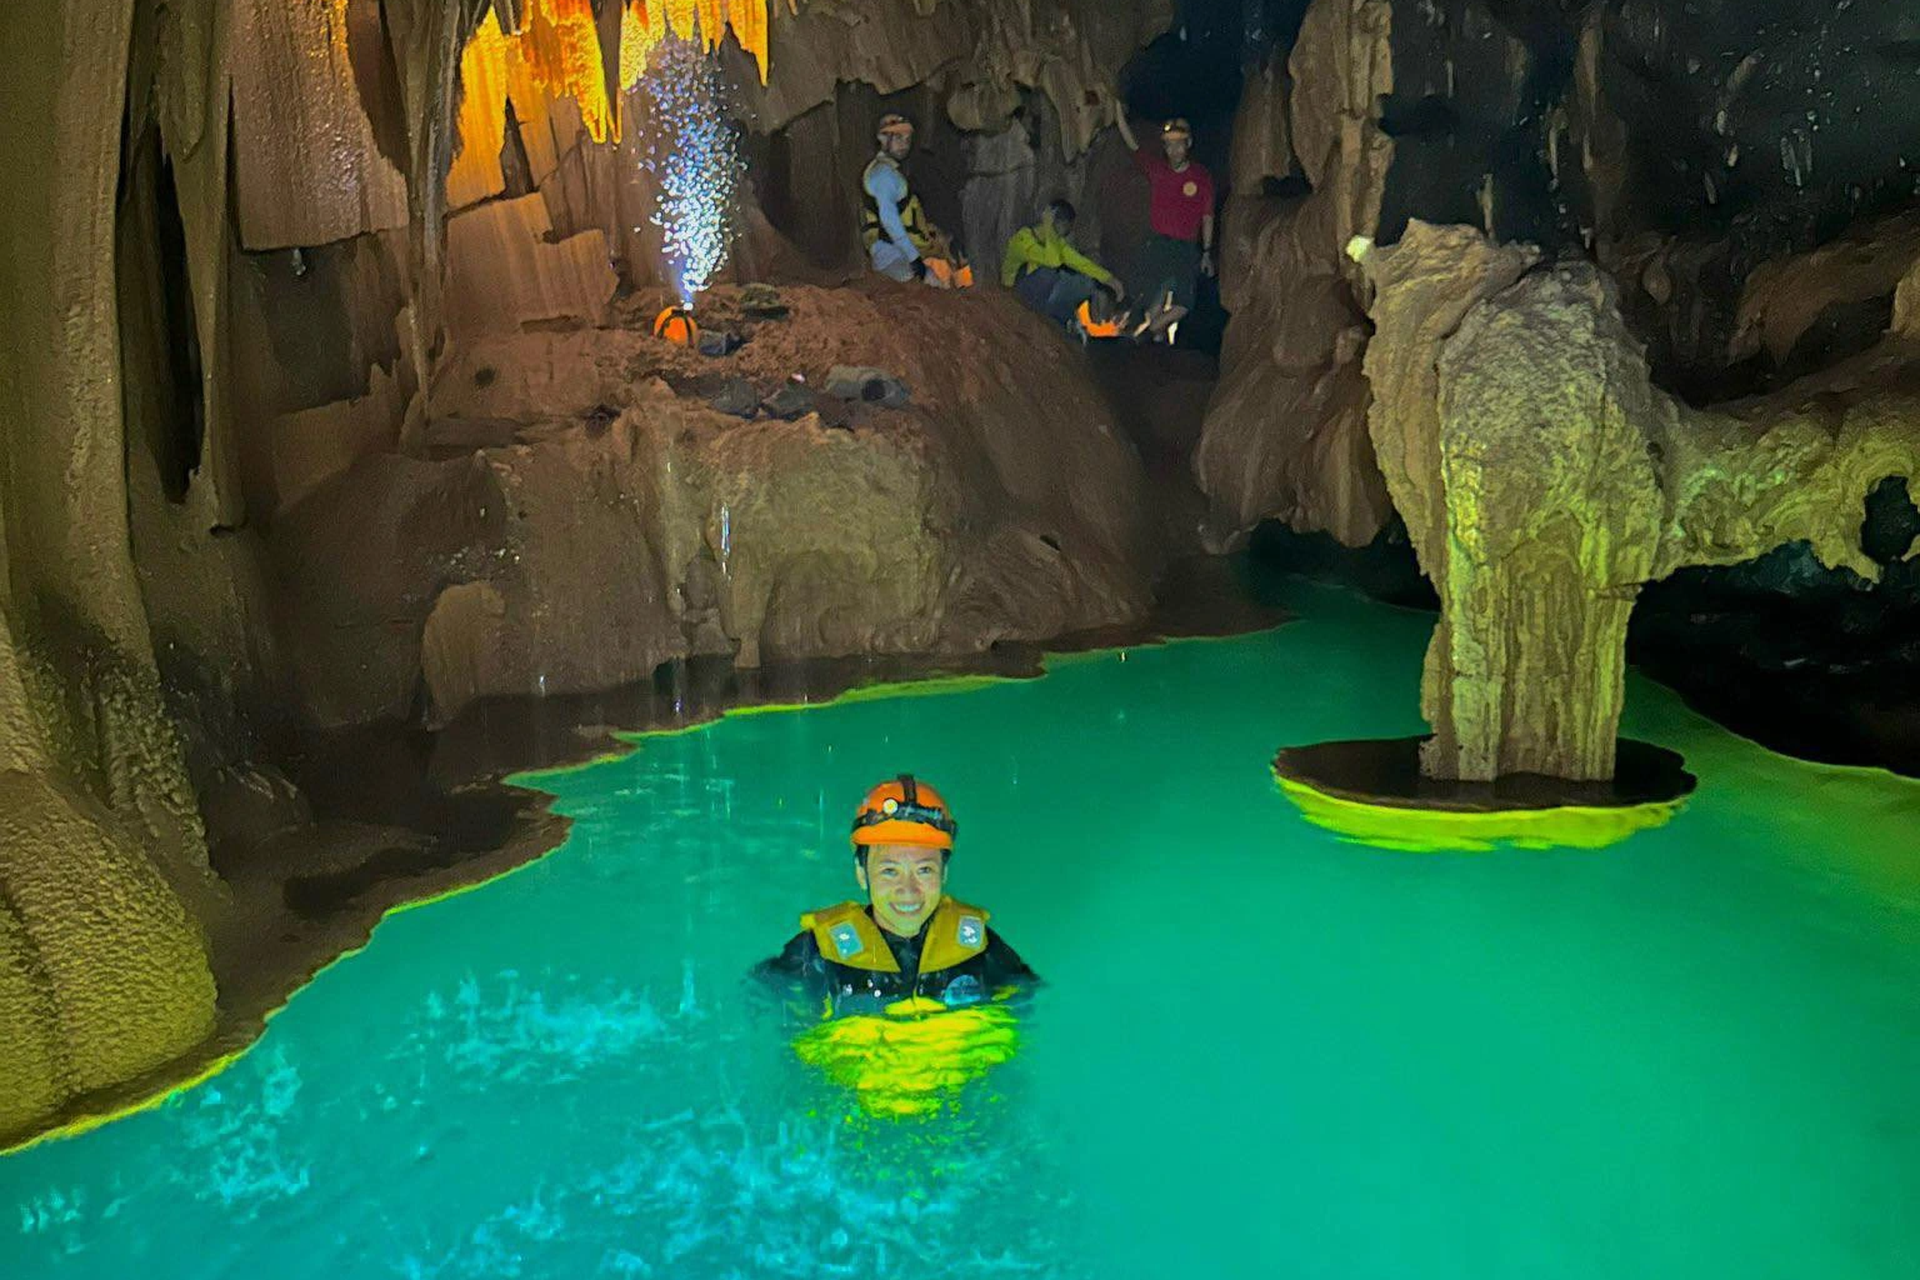 Vẻ đẹp siêu thực trong hang động có hồ nước bí ẩn treo lơ lửng - 2